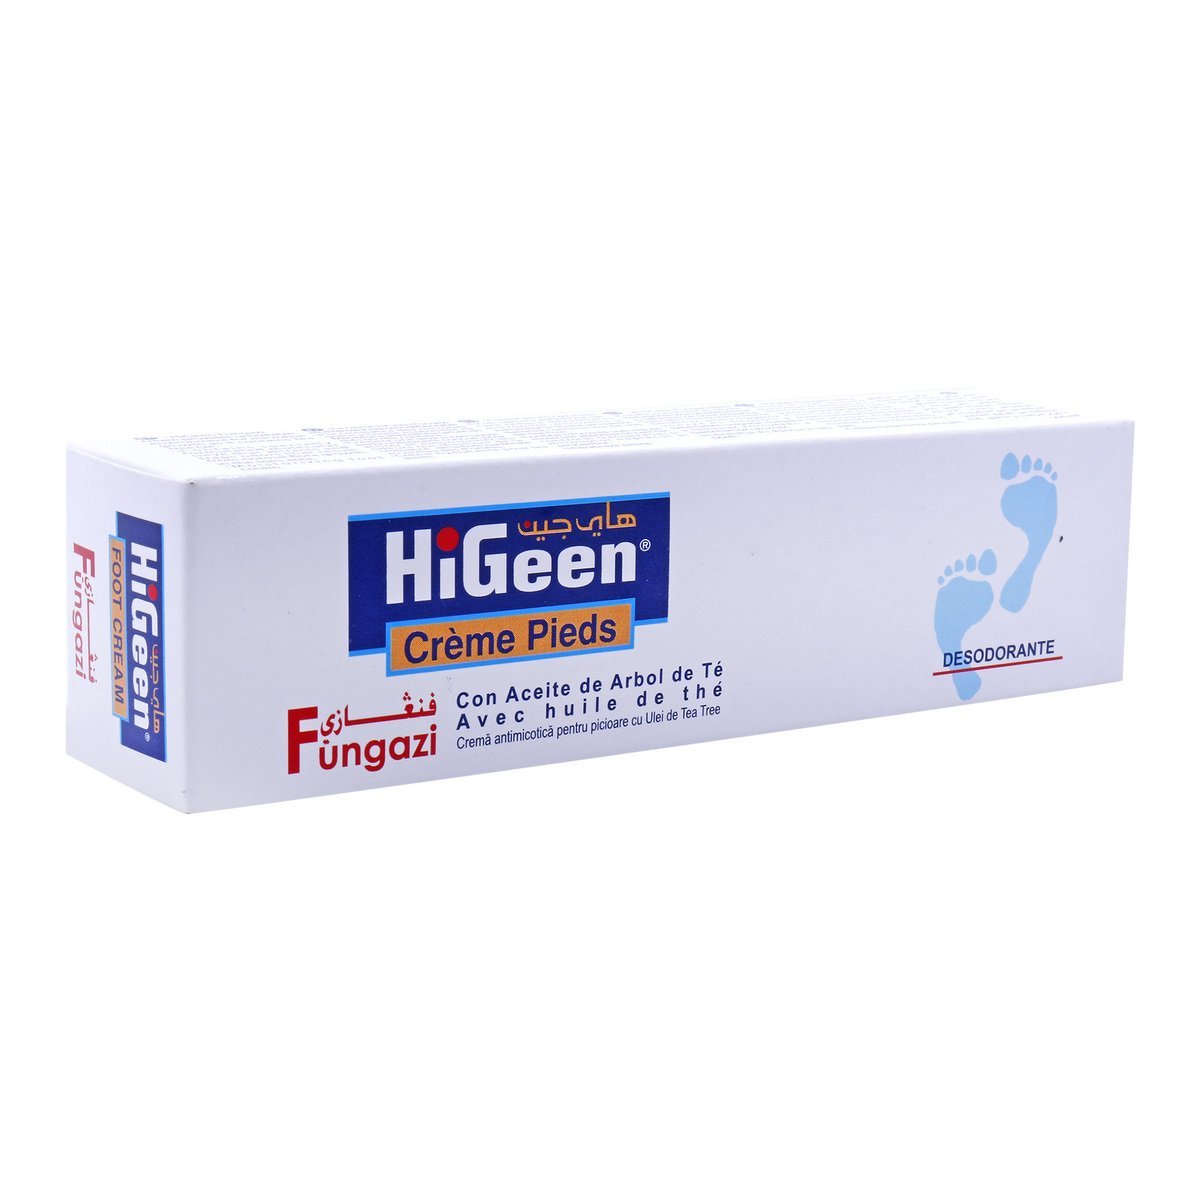 Hi-Geen Foot Cream 30g